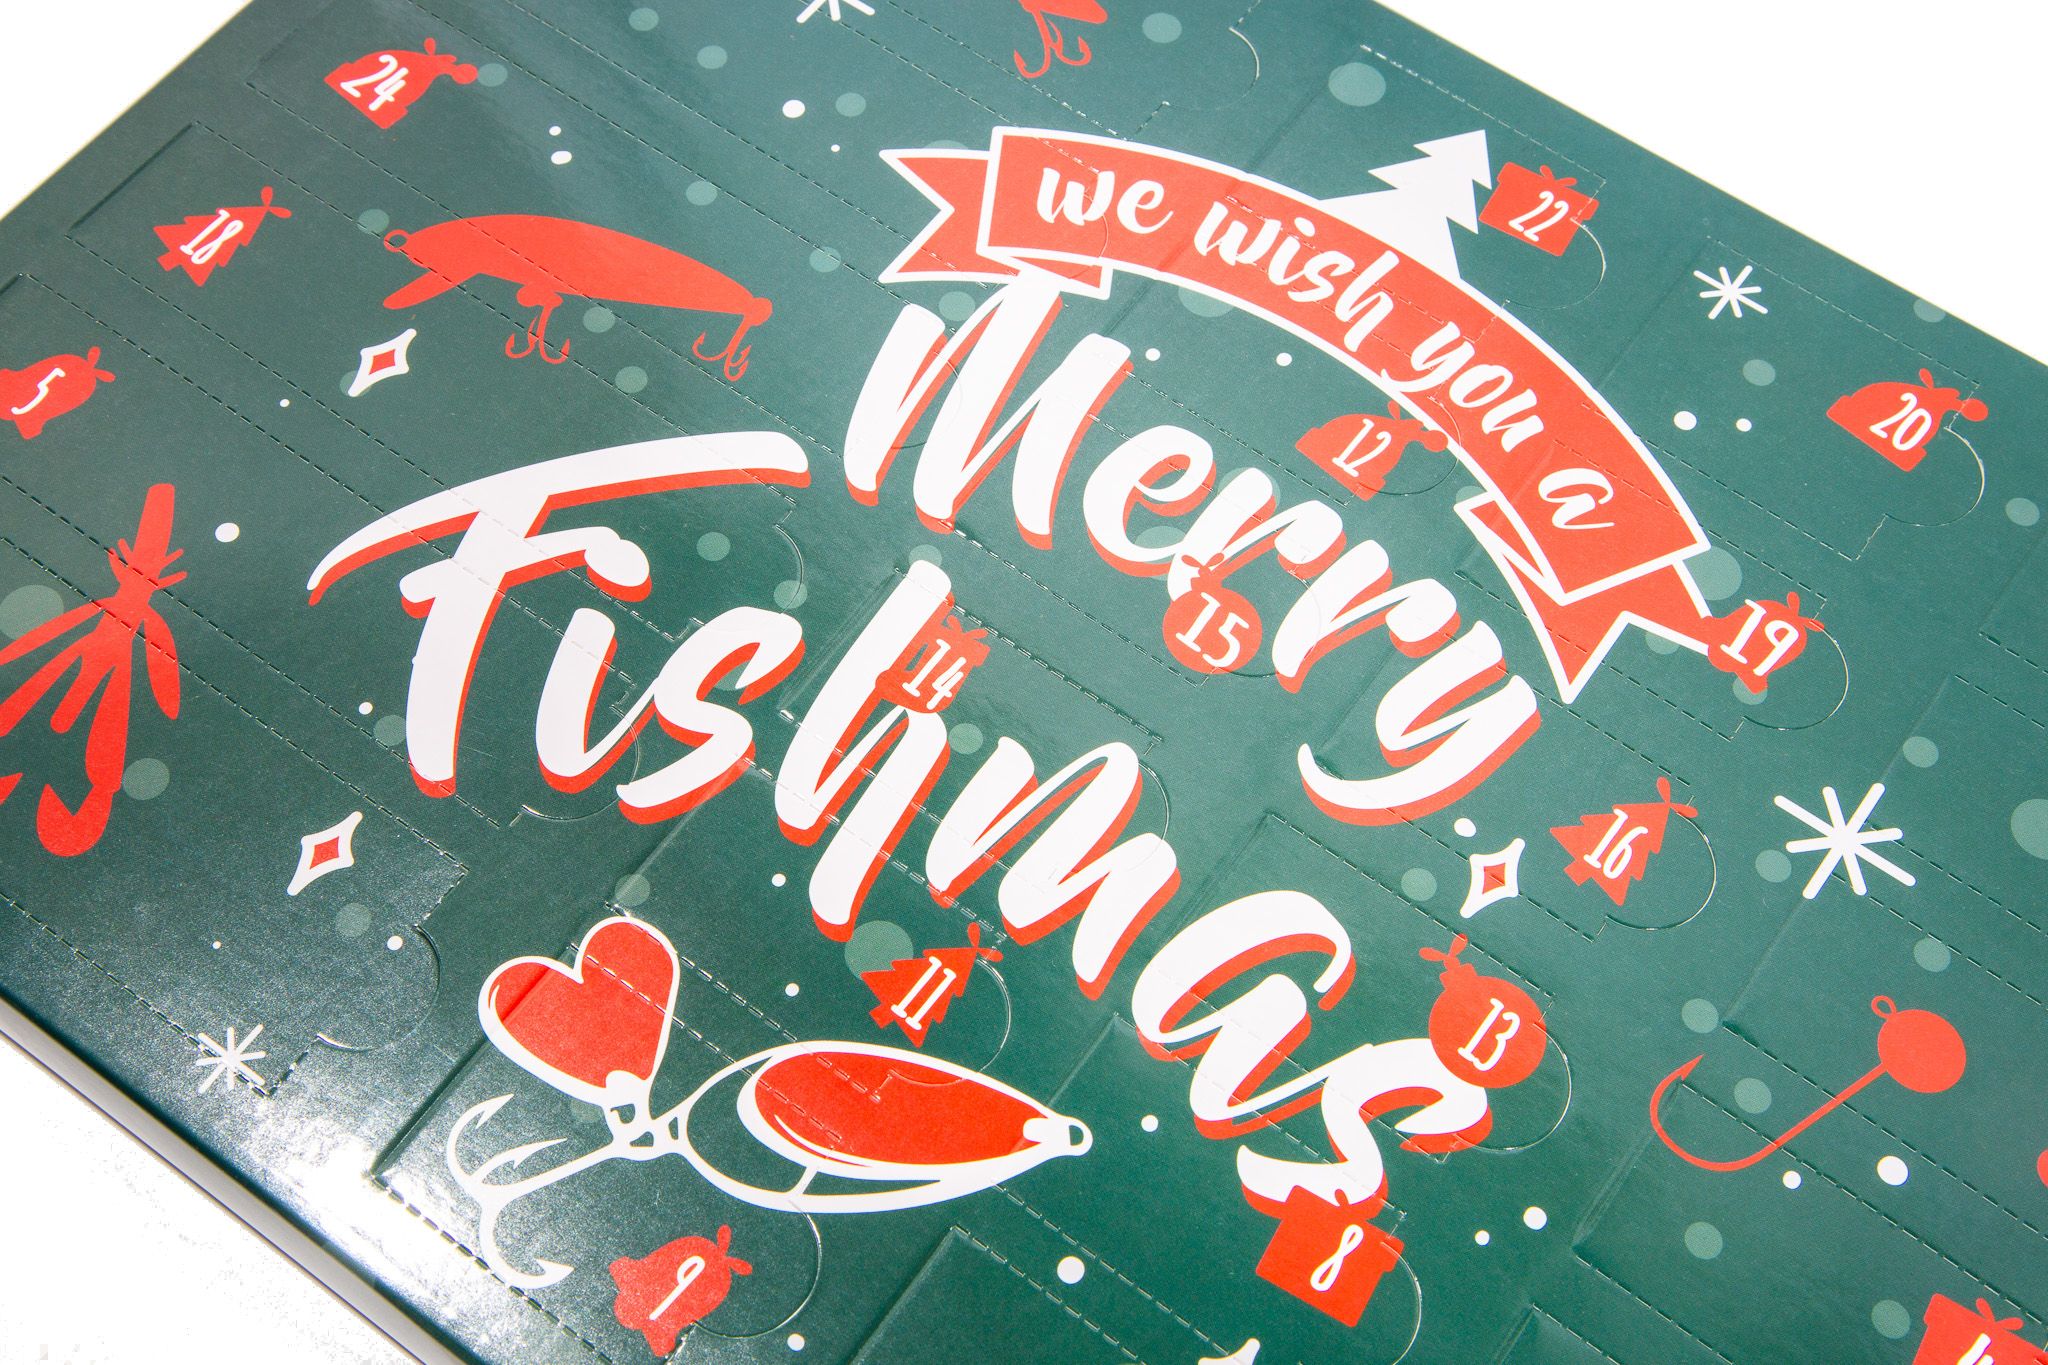 Calendrier de l'Avent Merry Fishmas (24 jours de cadeaux)